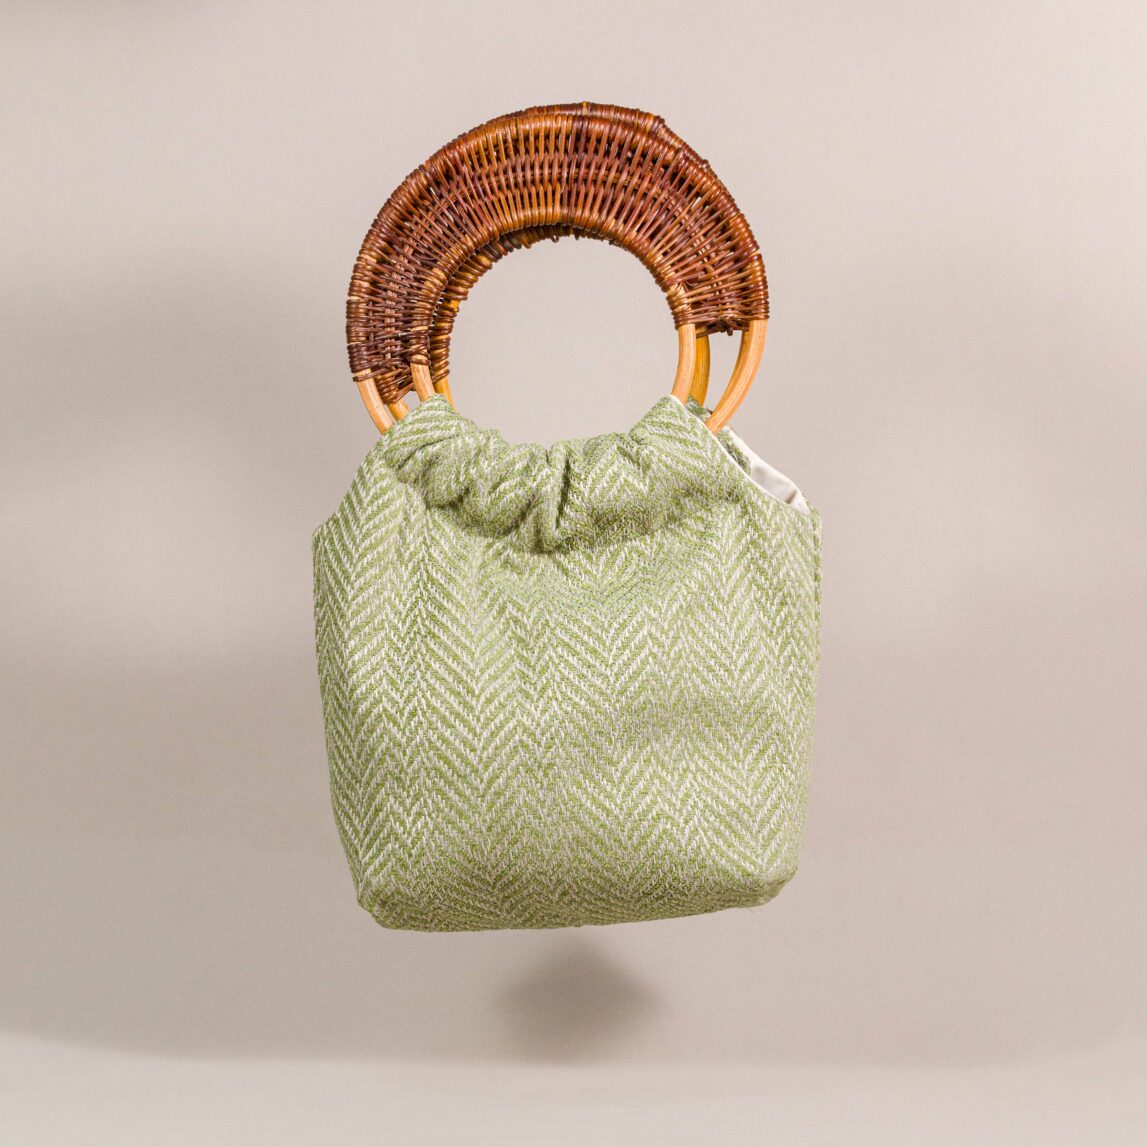 El Bolso de mano Módena está confeccionado con tela de lino y su forma tipo cesta le da un toque chic. ¿Listas para deslumbrar con este bolso de fiesta?